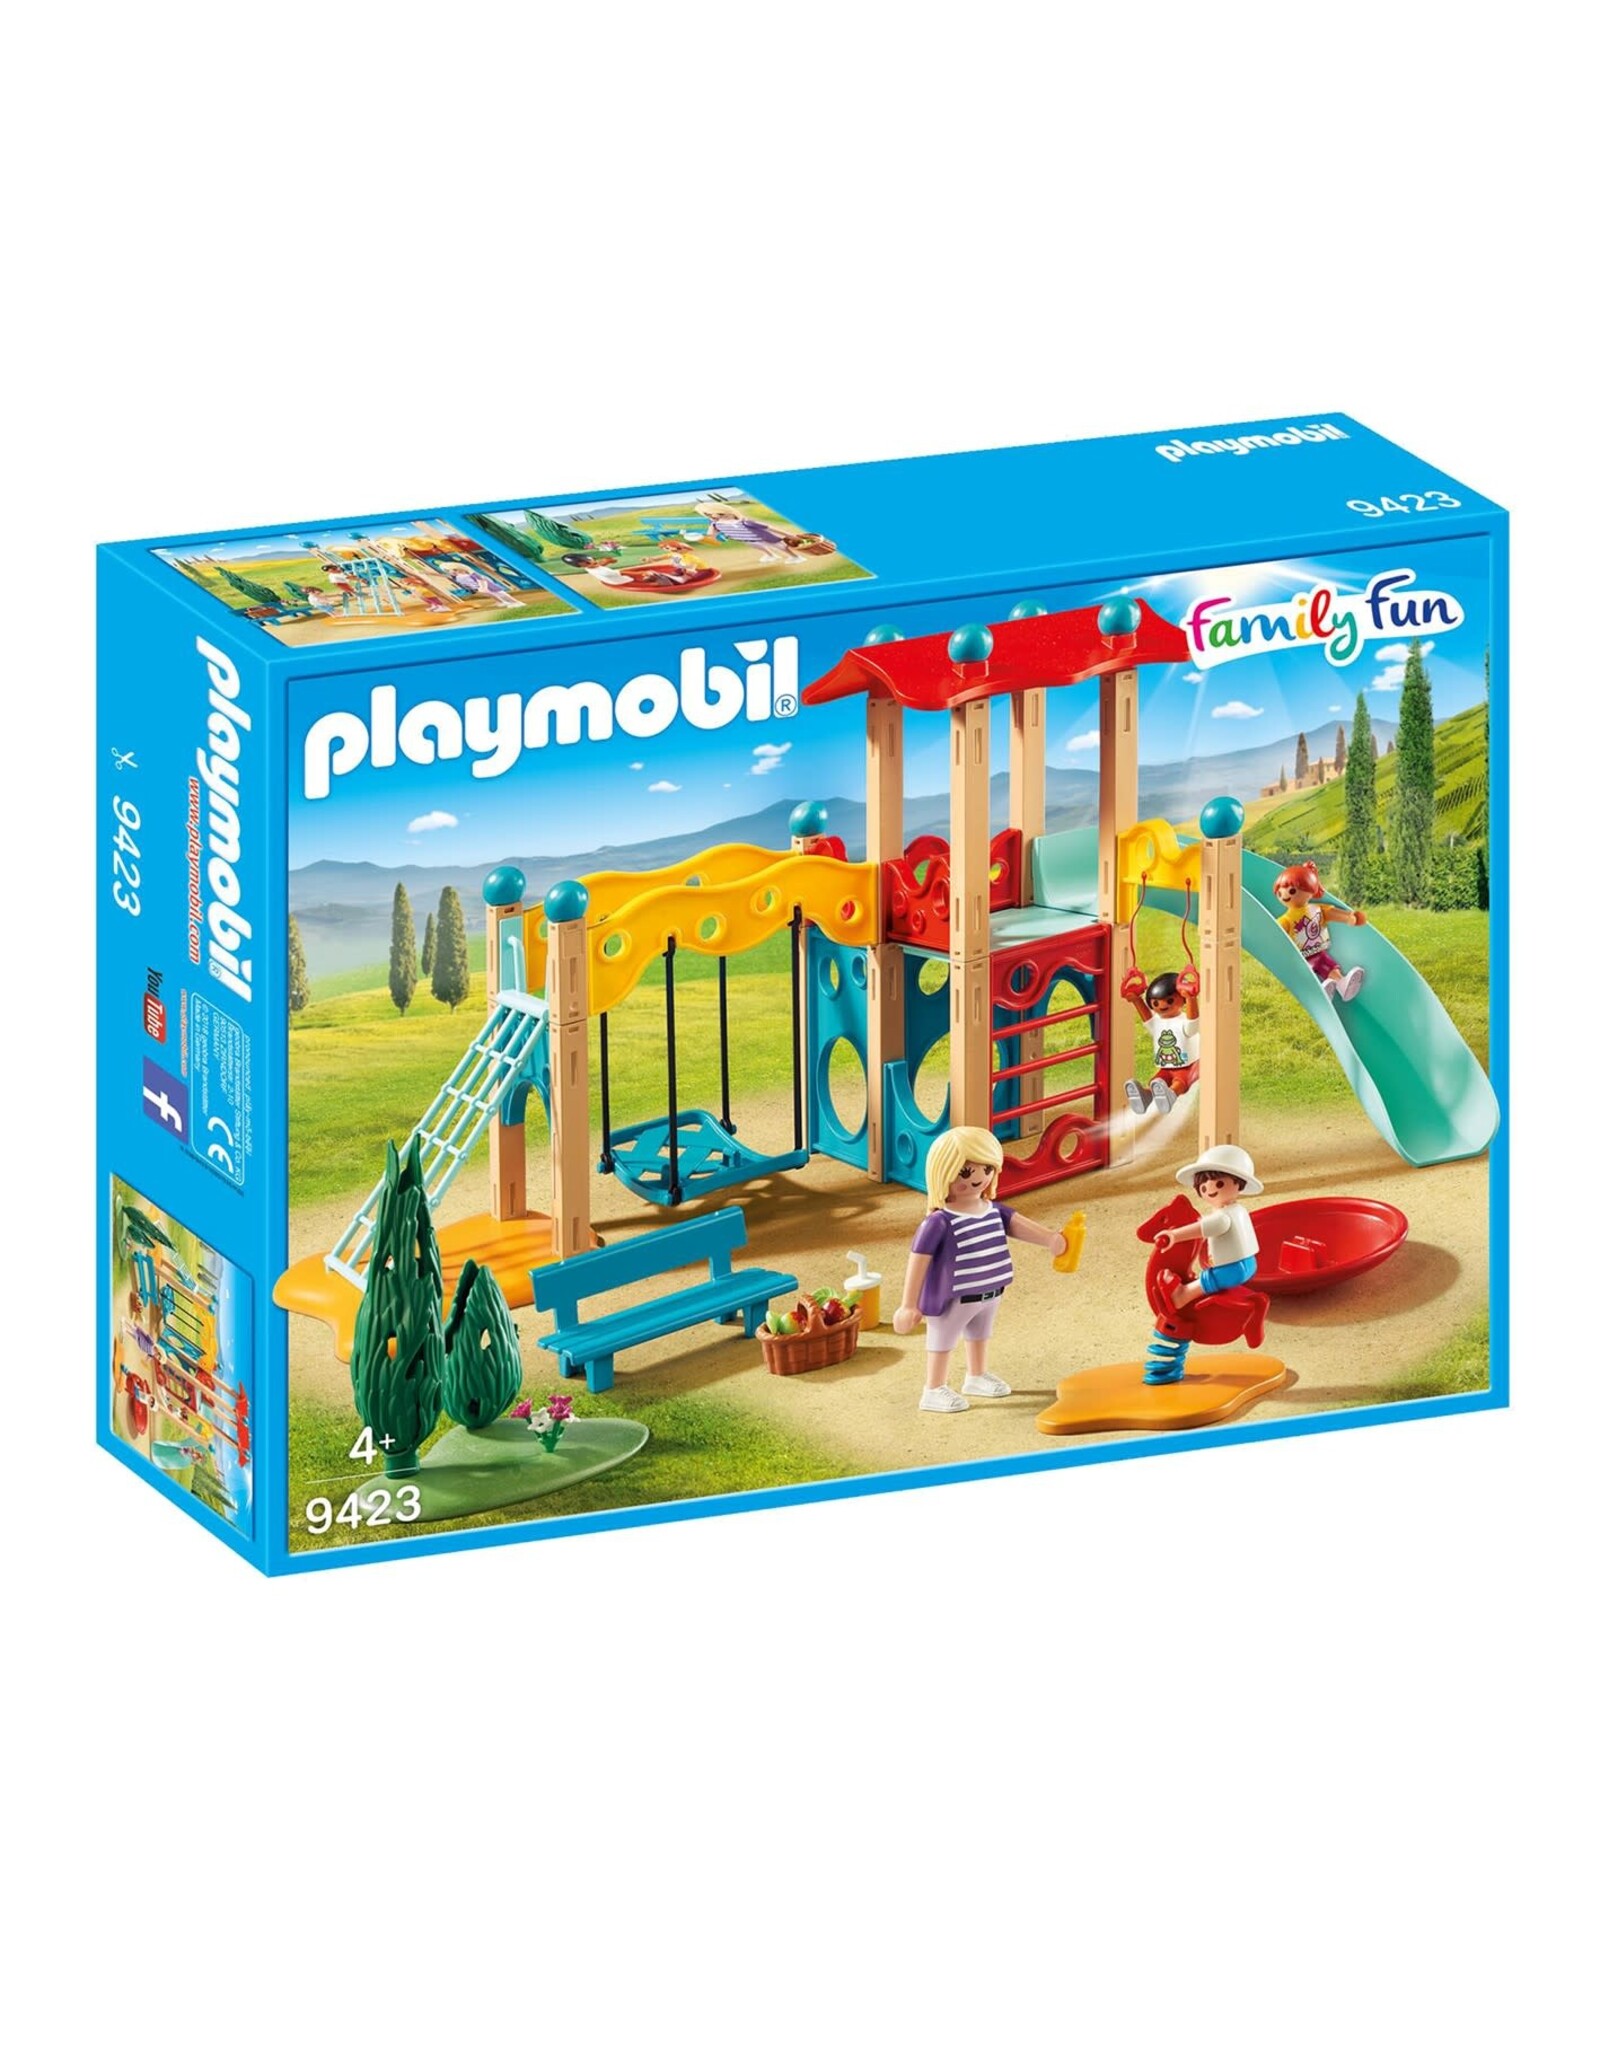 Playmobil Playmobil Family Fun 9423 Grote Speeltuin